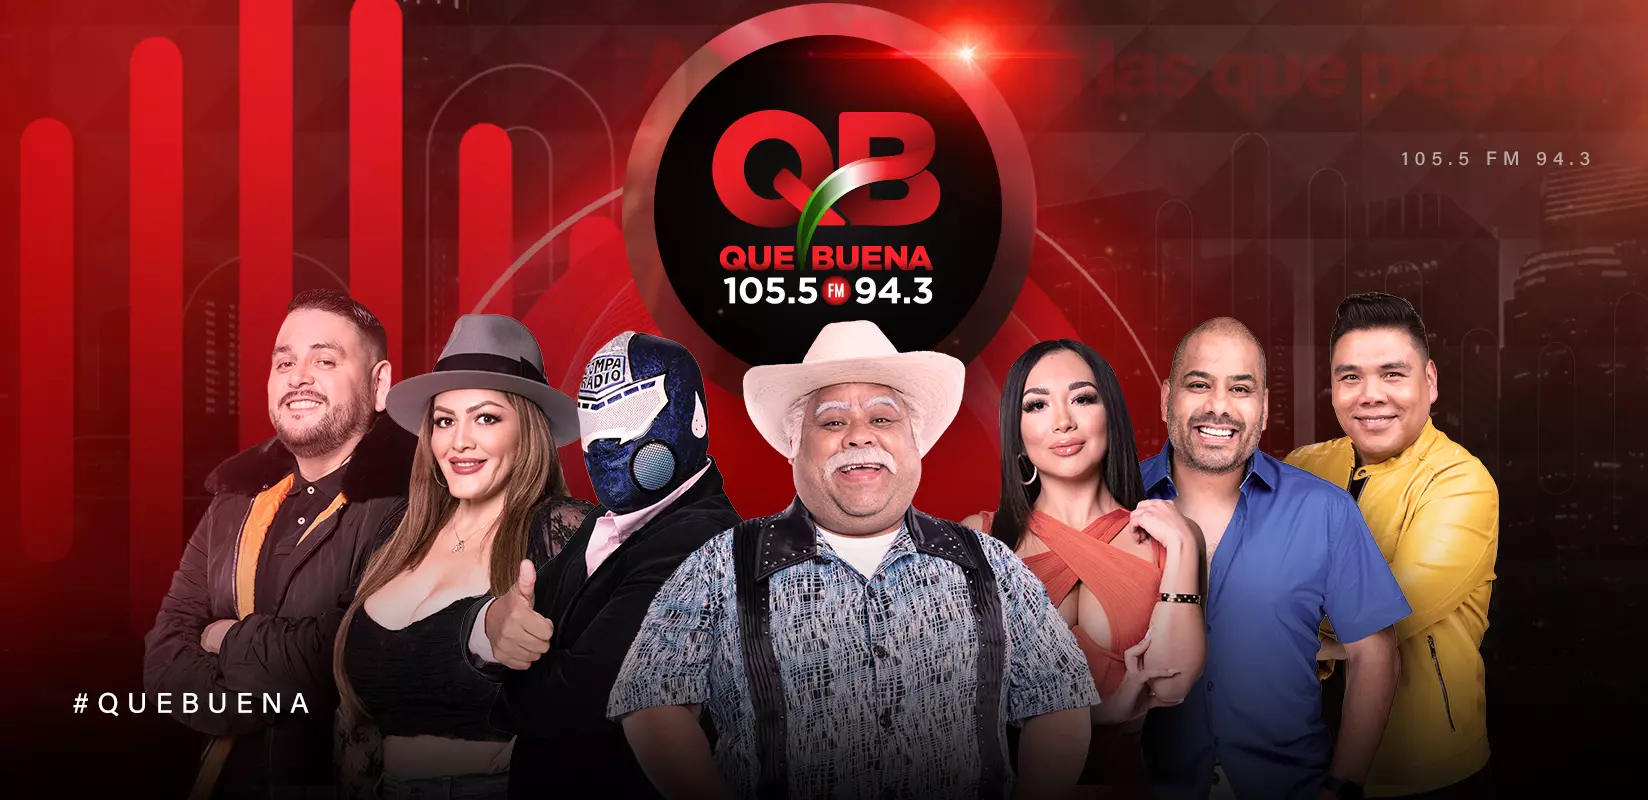 Aquí suena la Qué Buena! Estación de radio para los latinos en Los Ángeles conducida por Don Cheto, Gisselle Bravo, El Chino, Said, El Compa Marlene Quinto y J9.